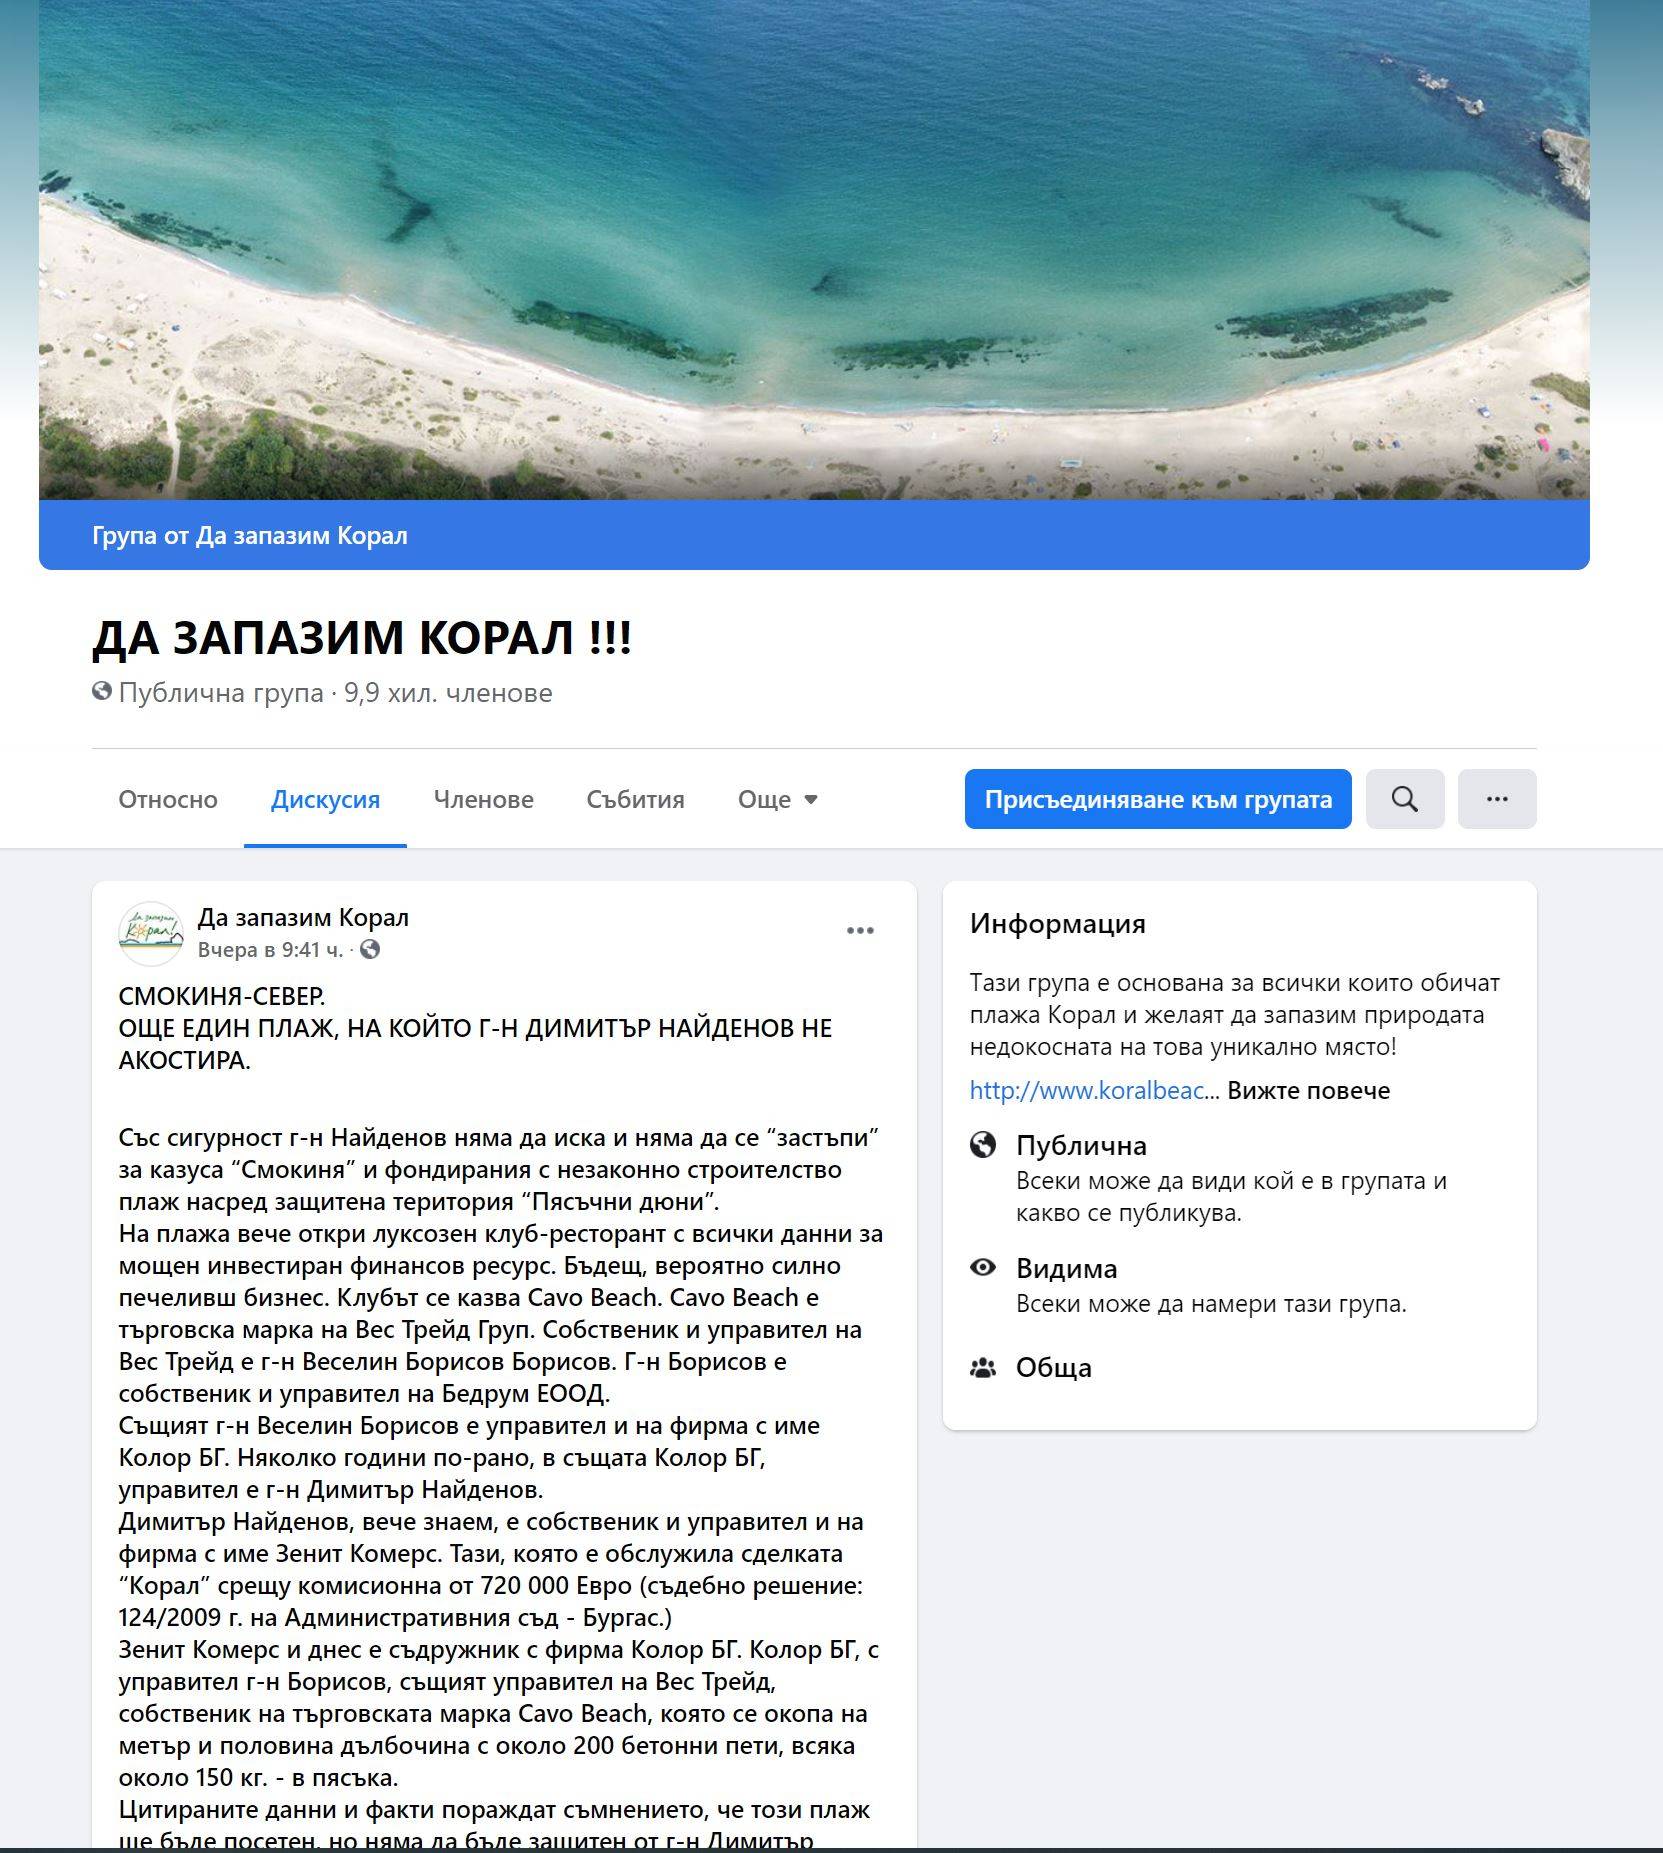 Фейсбук групата Да запазим Корал